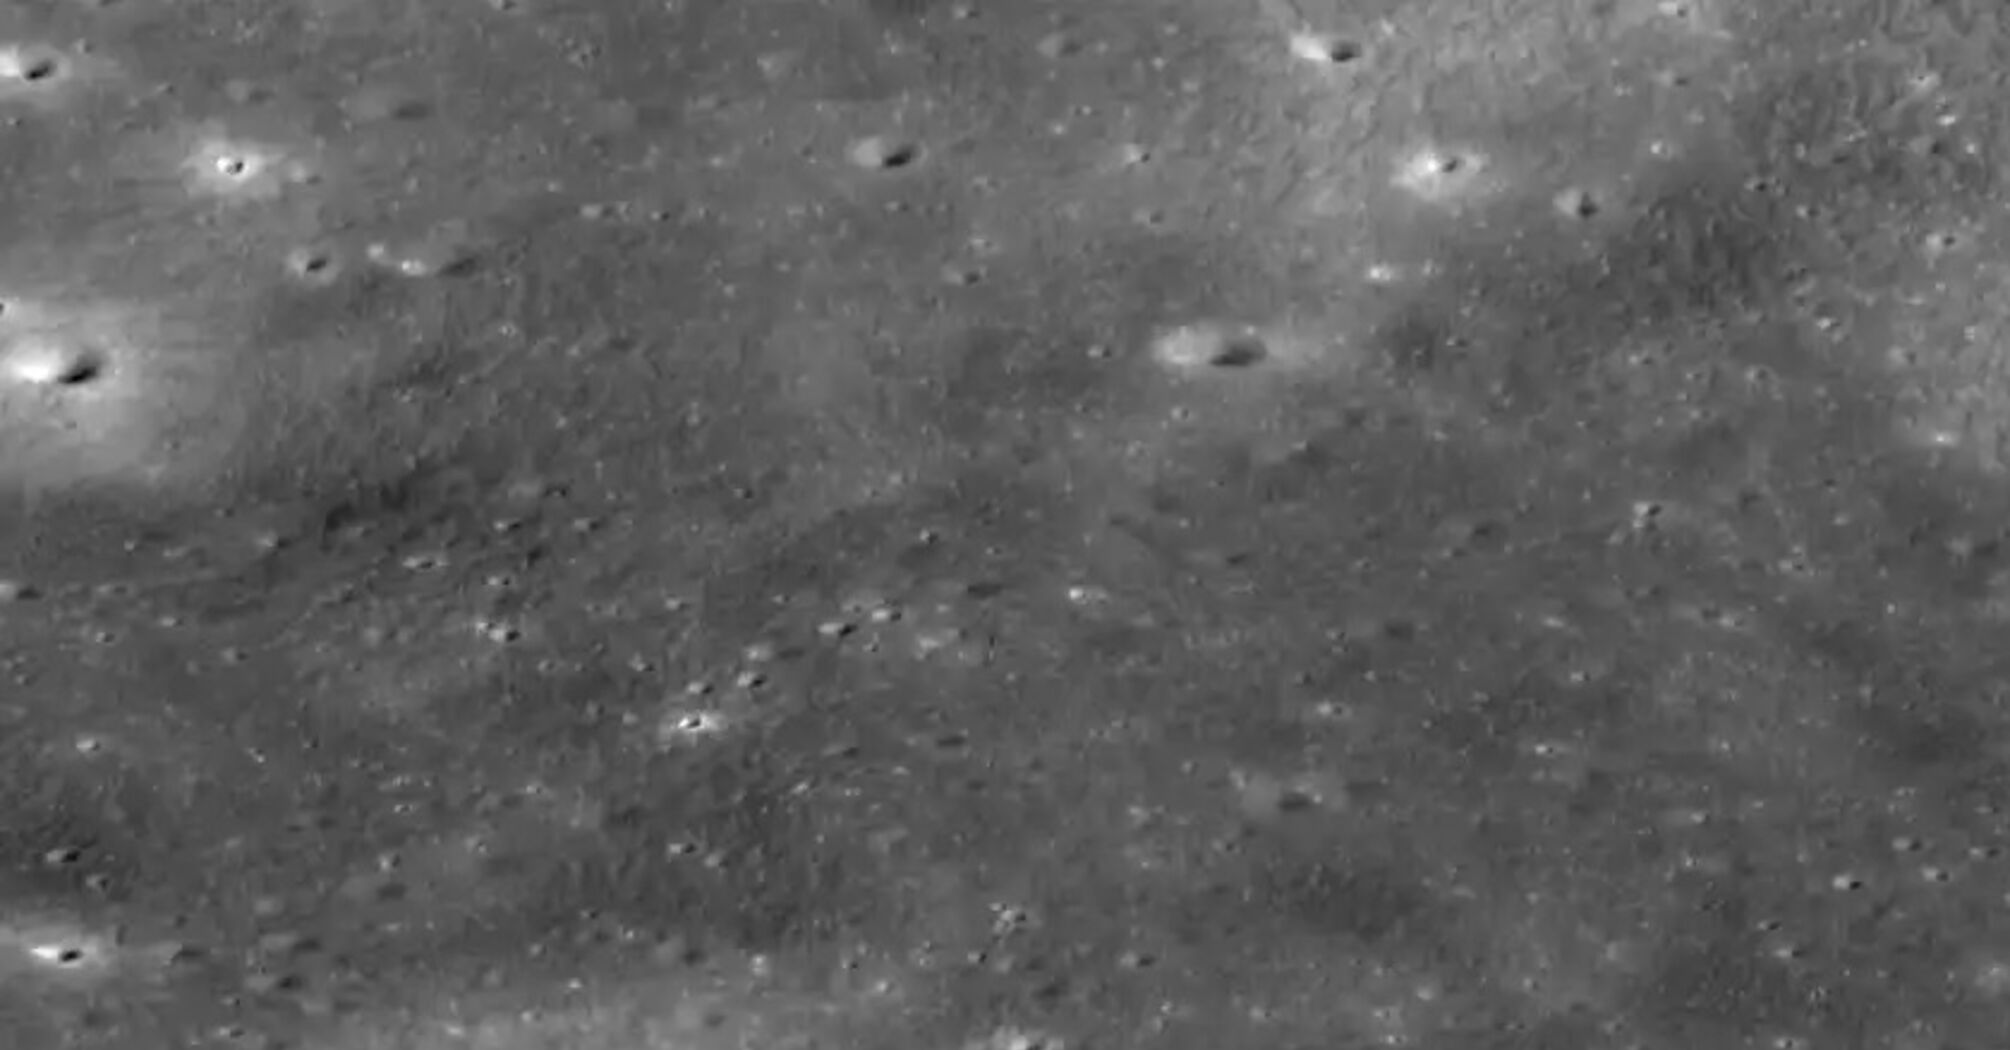 NASA установило происхождение таинственного космического объекта, вращающегося вокруг Луны (фото)